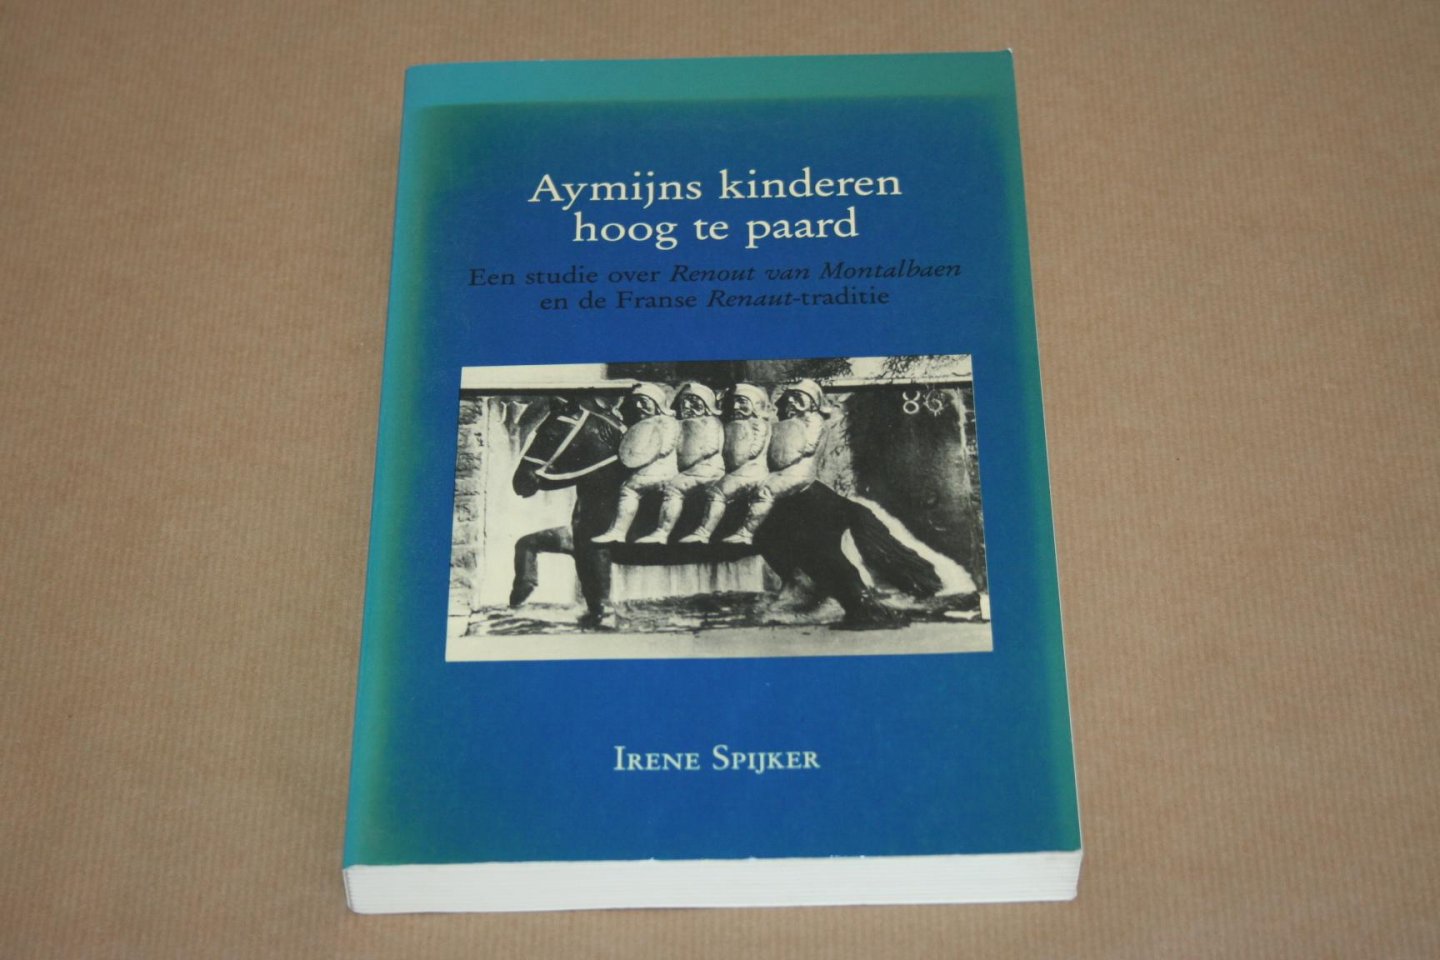 Proefschrift ... door Irene Spijker - Aymijns kinderen te paard  --  Een studie over Renout van Montalbaen en de Fanse Renaut-traditie